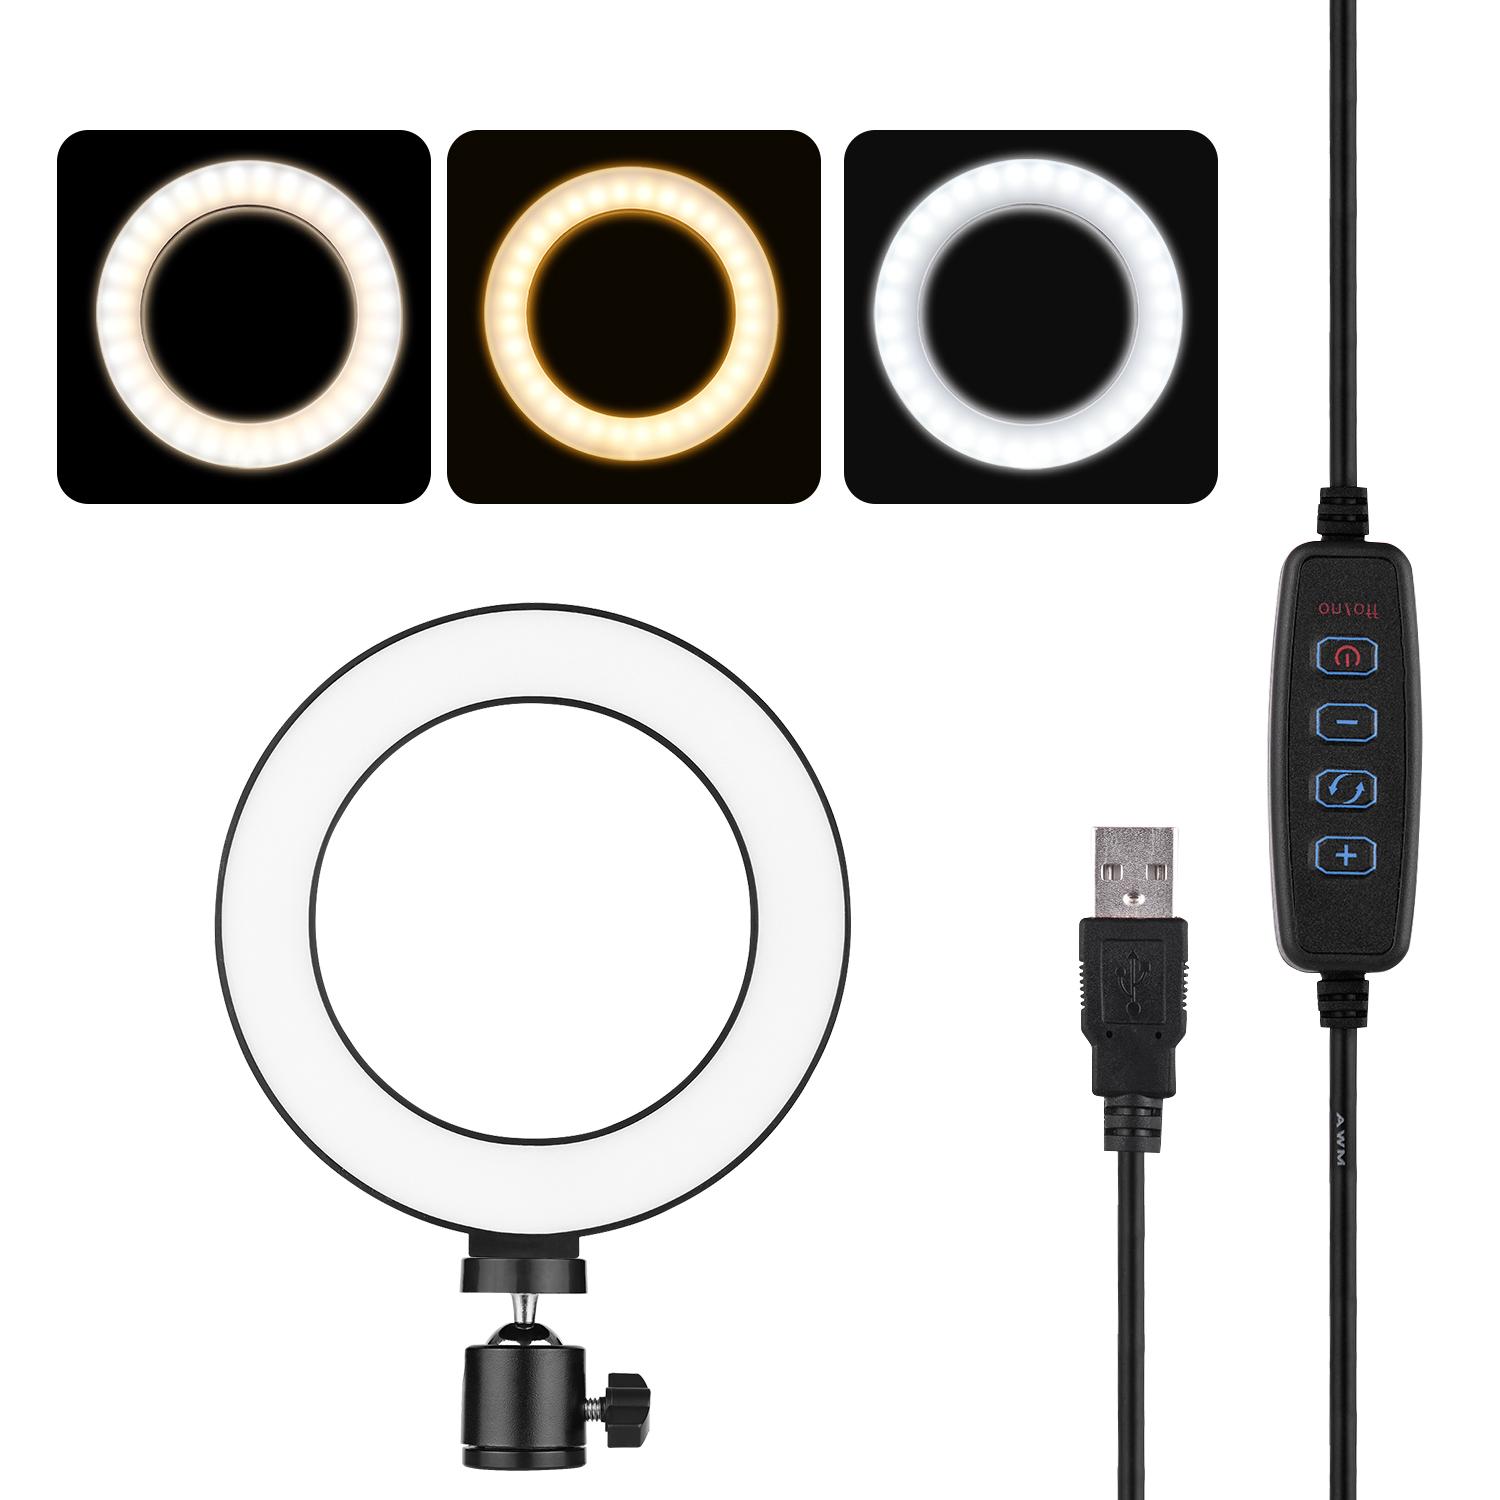 Đèn vòng LED chụp ảnh  nhỏ 6 inch có thể điều chỉnh độ sáng 3 chế độ - Hồng